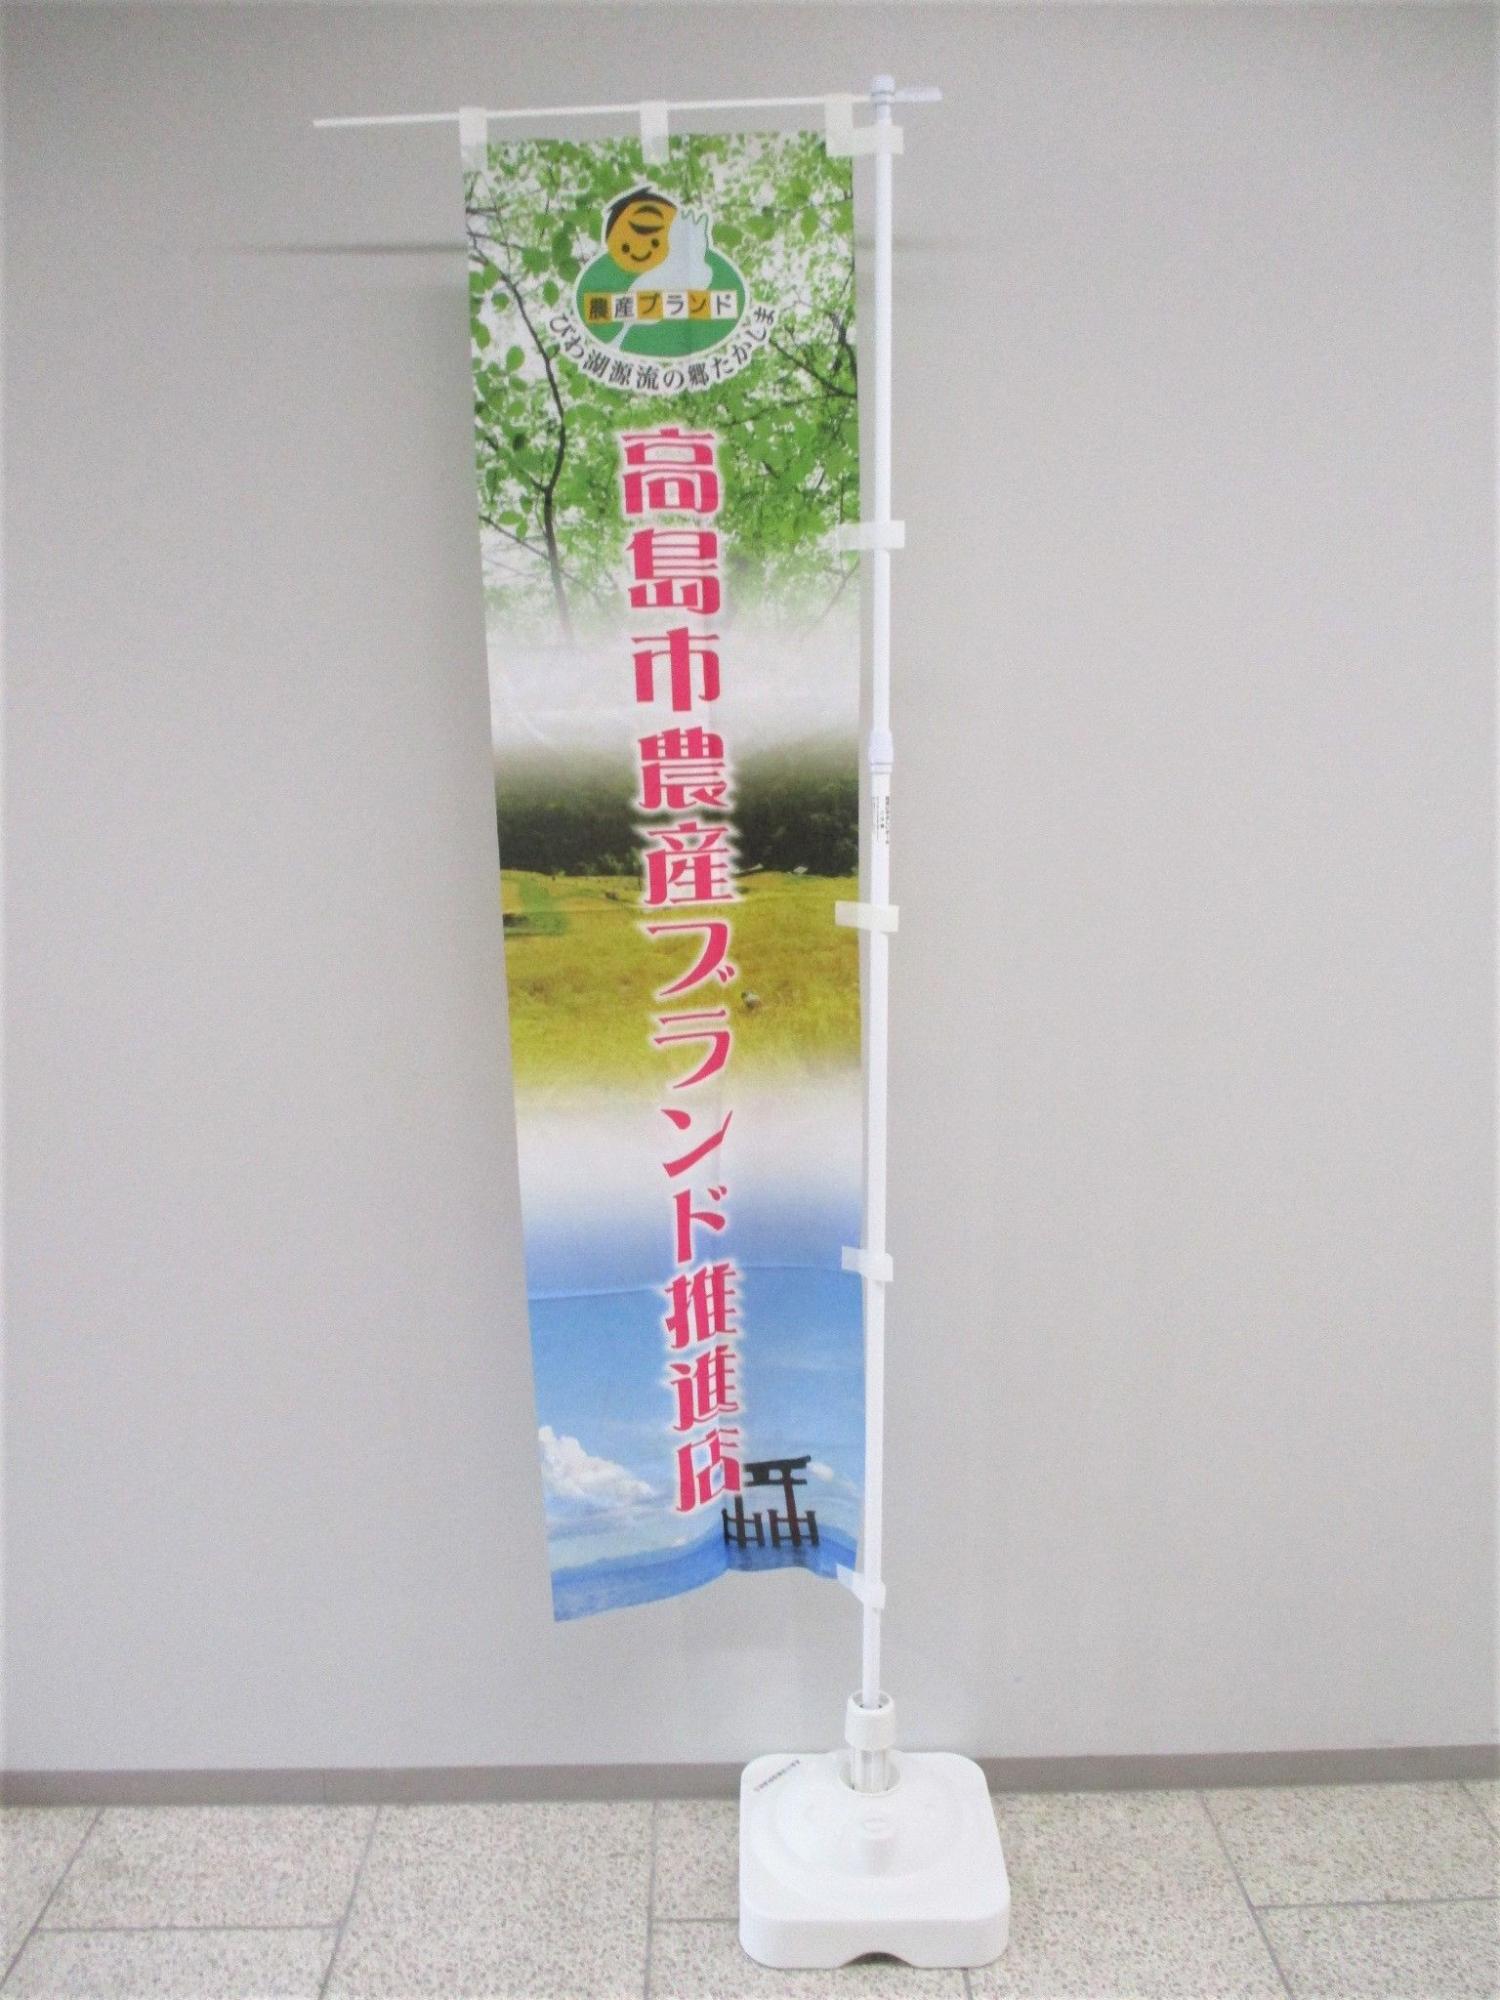 「高島市農産ブランド推進店」と書かれたのぼり旗の写真